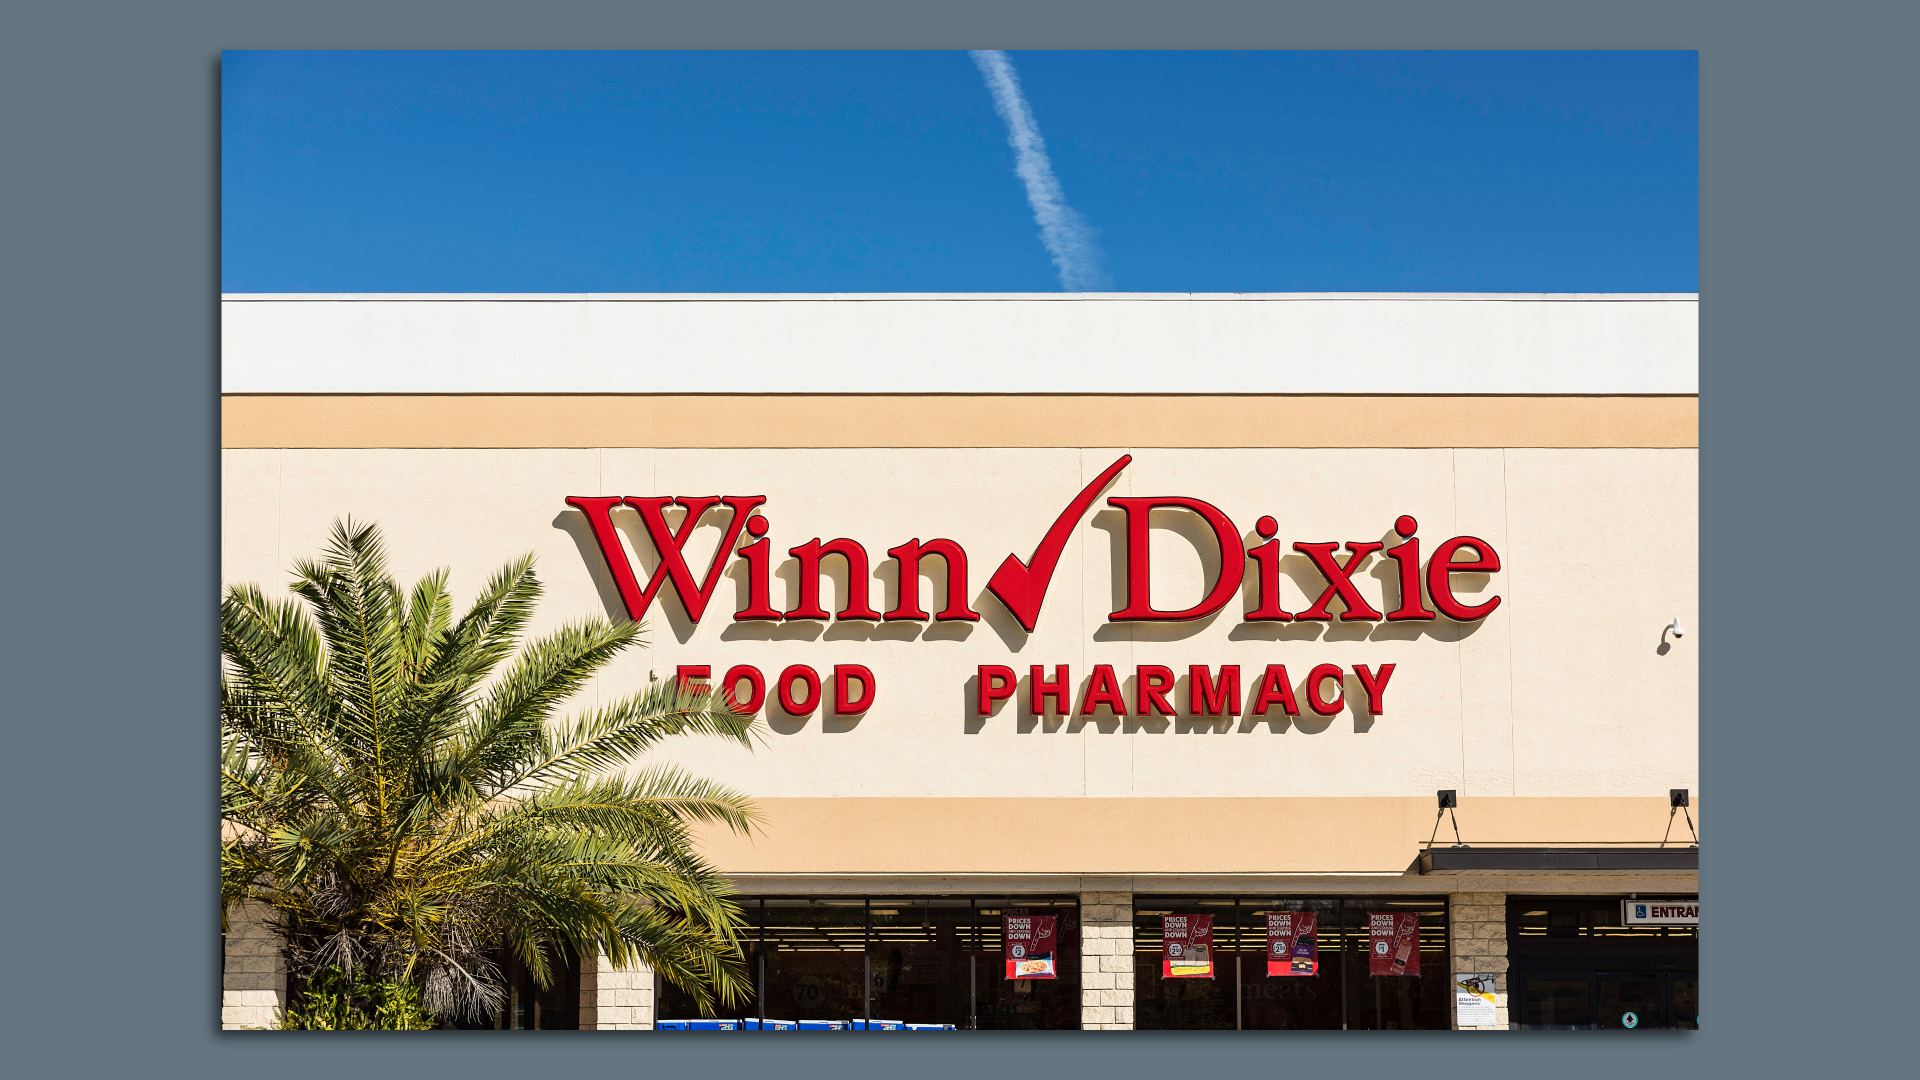 Image of Winn Dixie storefront